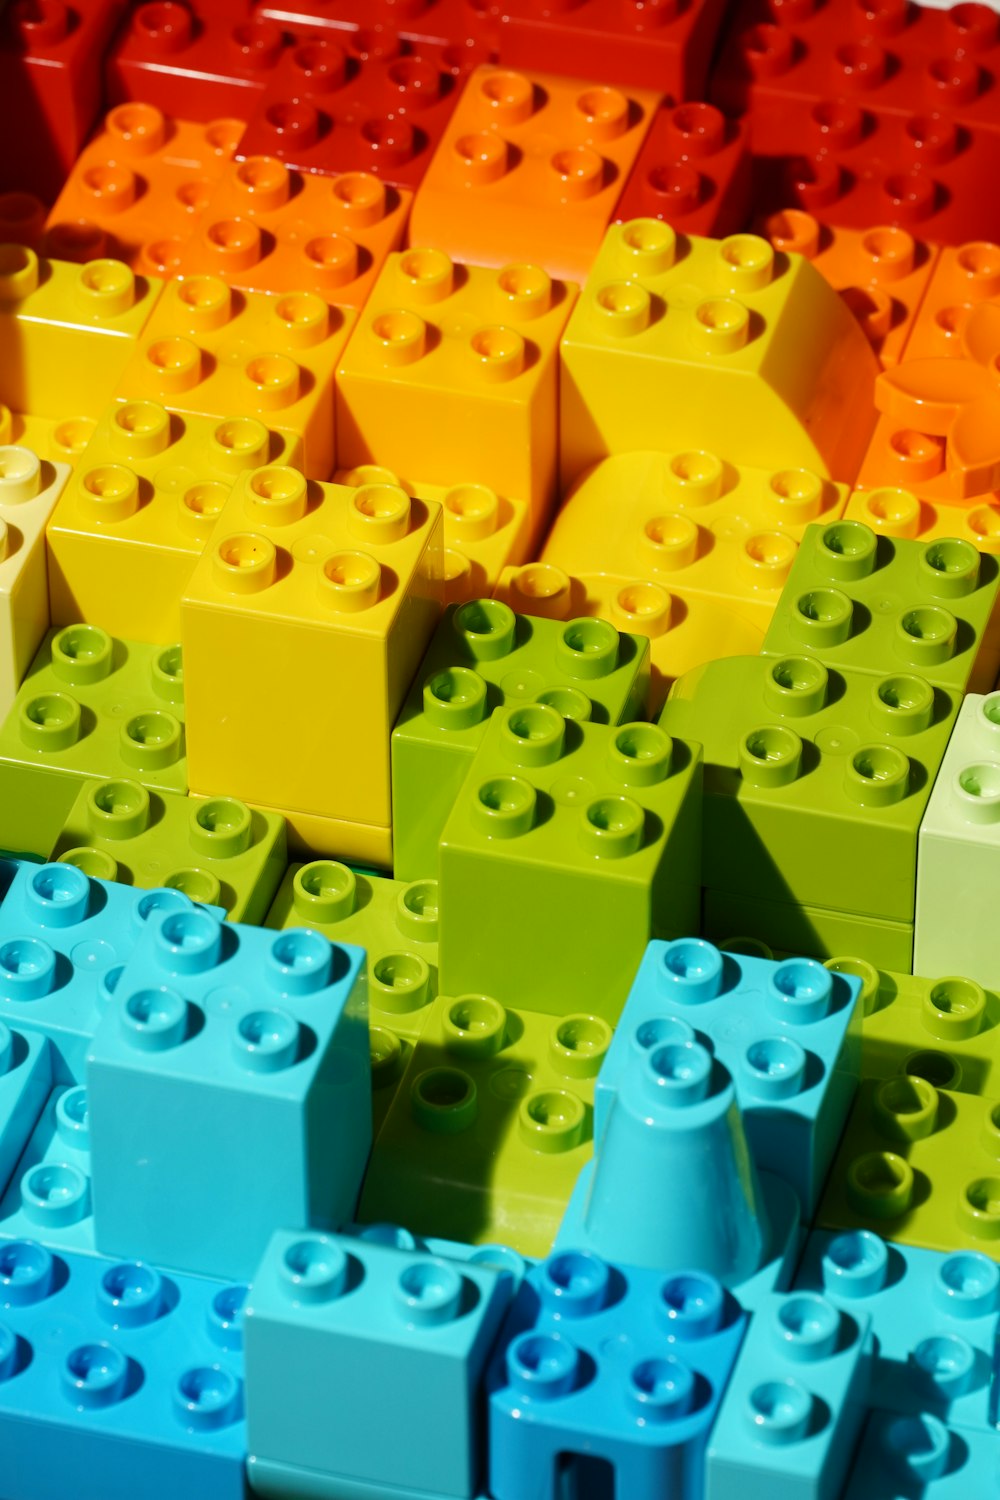 Un primer plano de muchos legos de diferentes colores